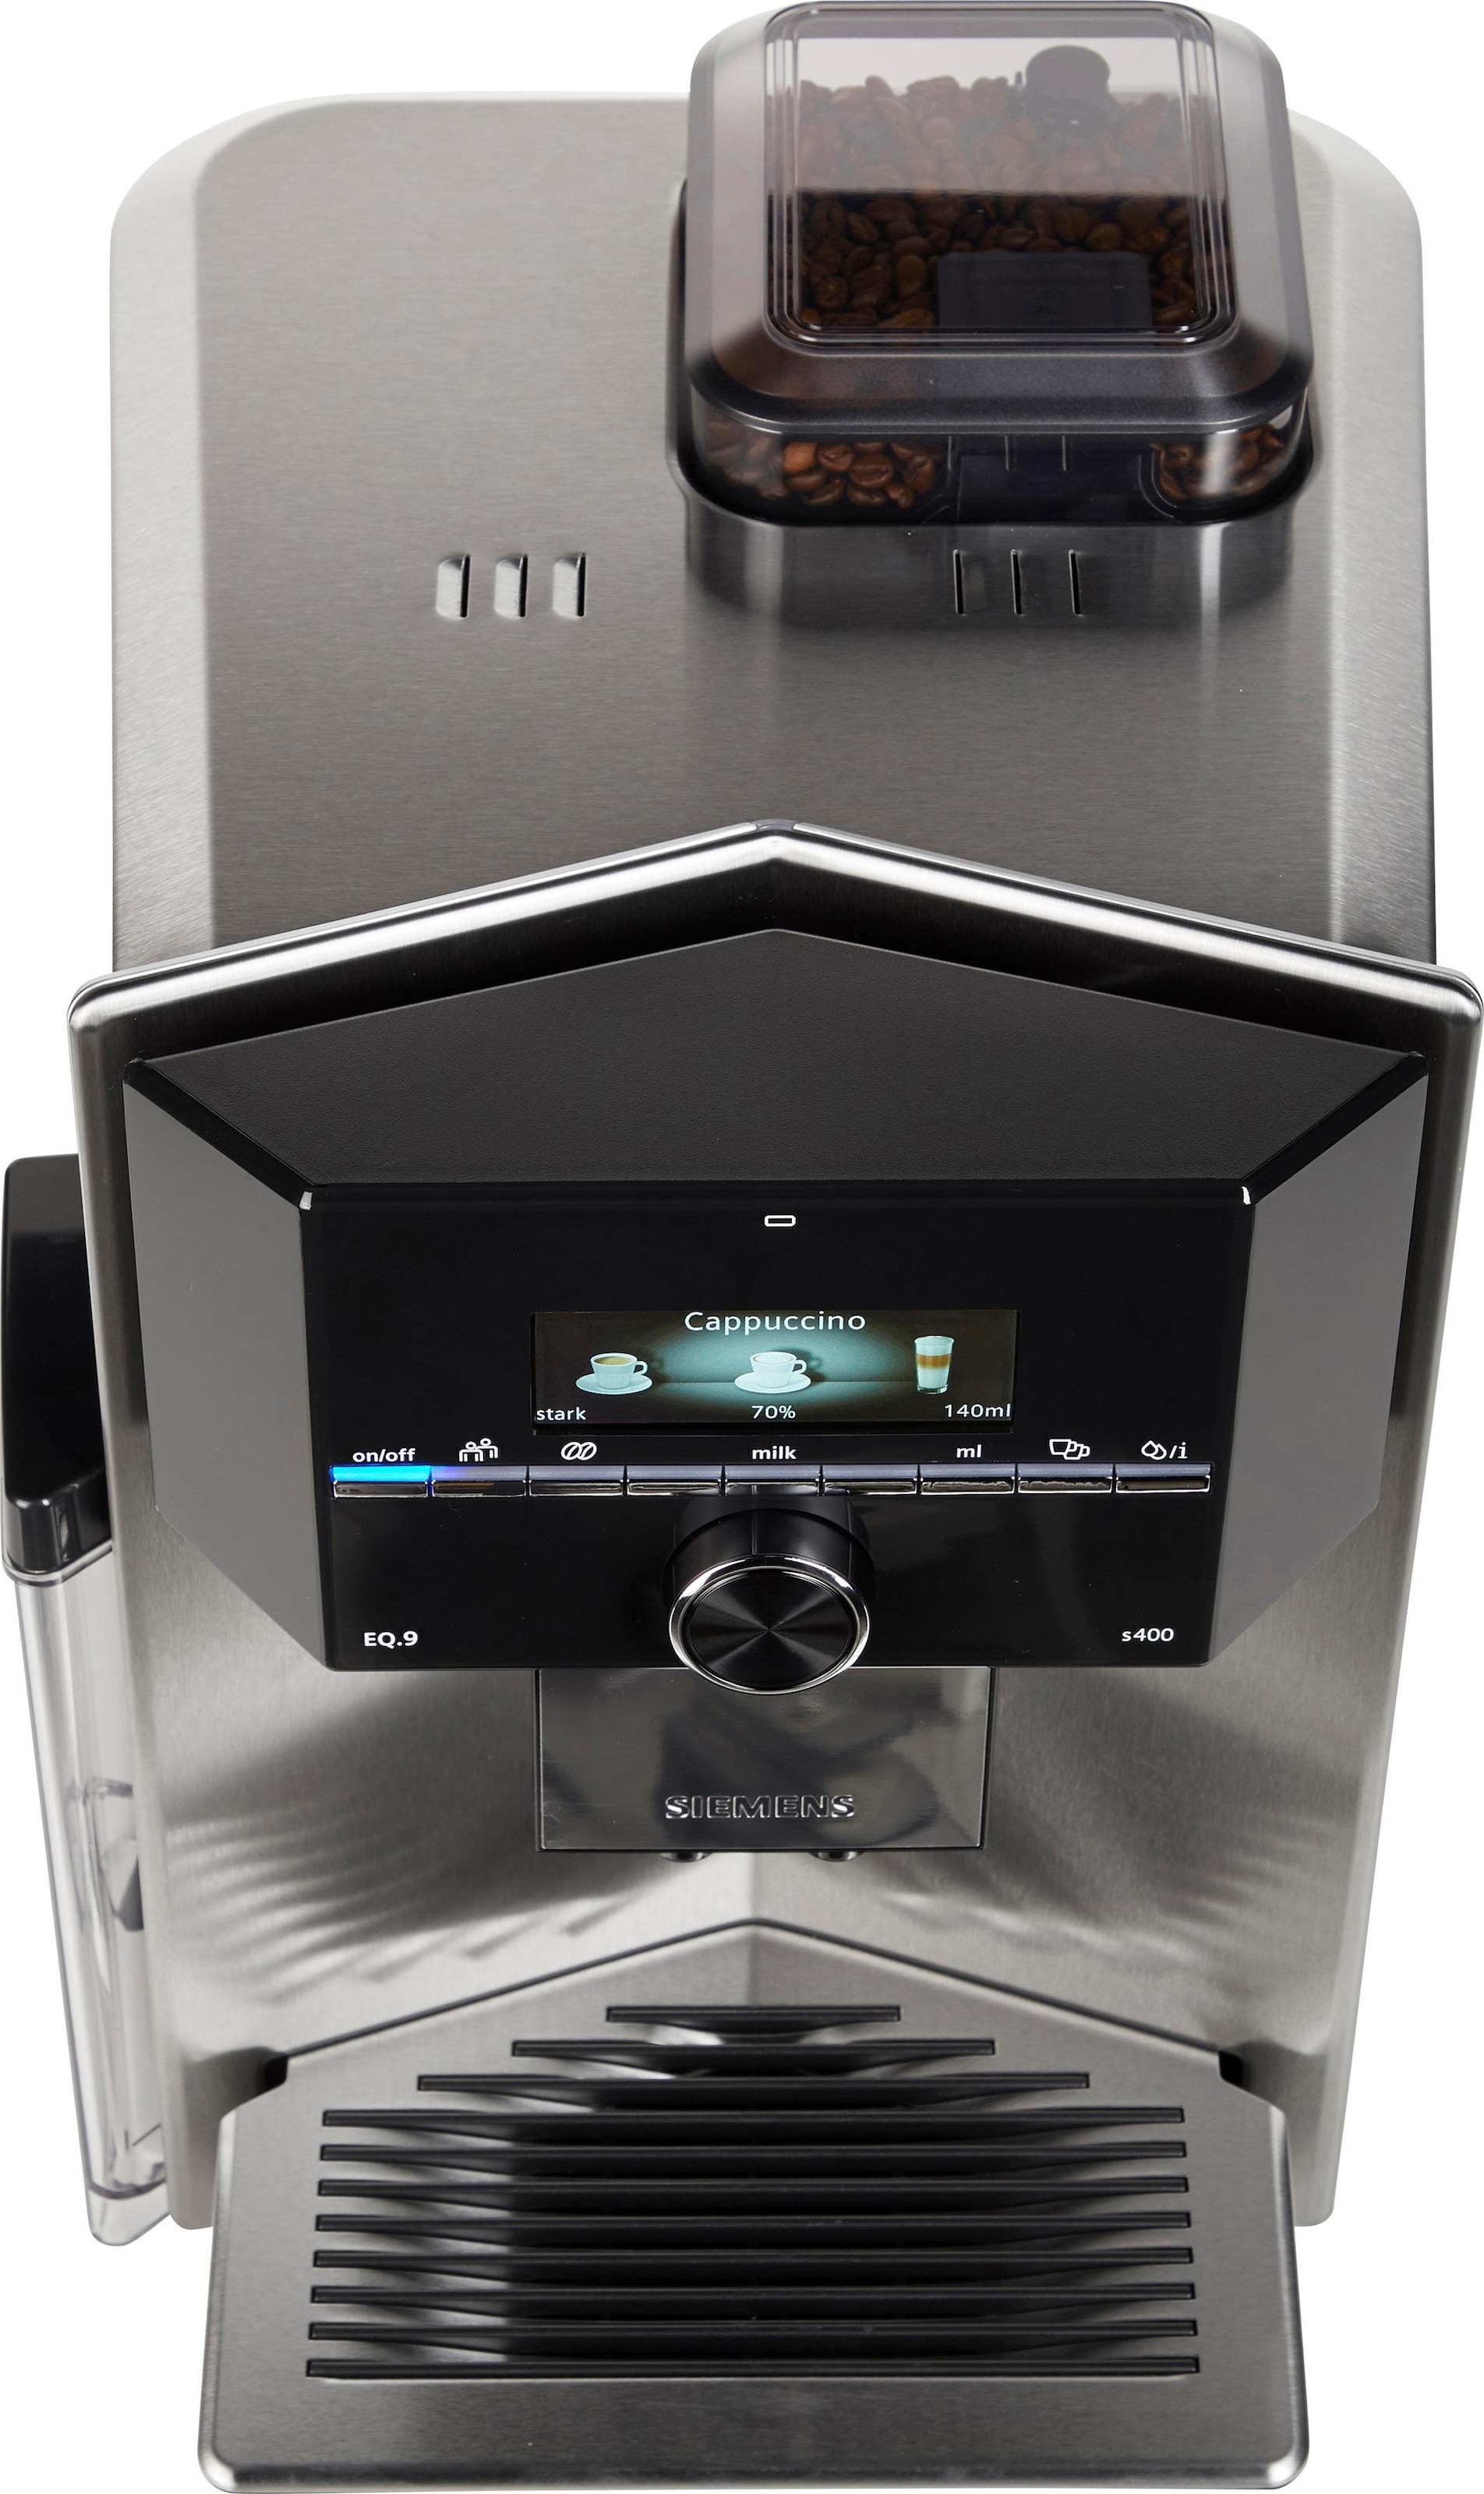 SIEMENS Kaffeevollautomat »EQ.9 s400 zu extra Shop OTTO leise, automatische im 6 Milchsystem-Reinigung, Online TI924501DE«, Profile bis